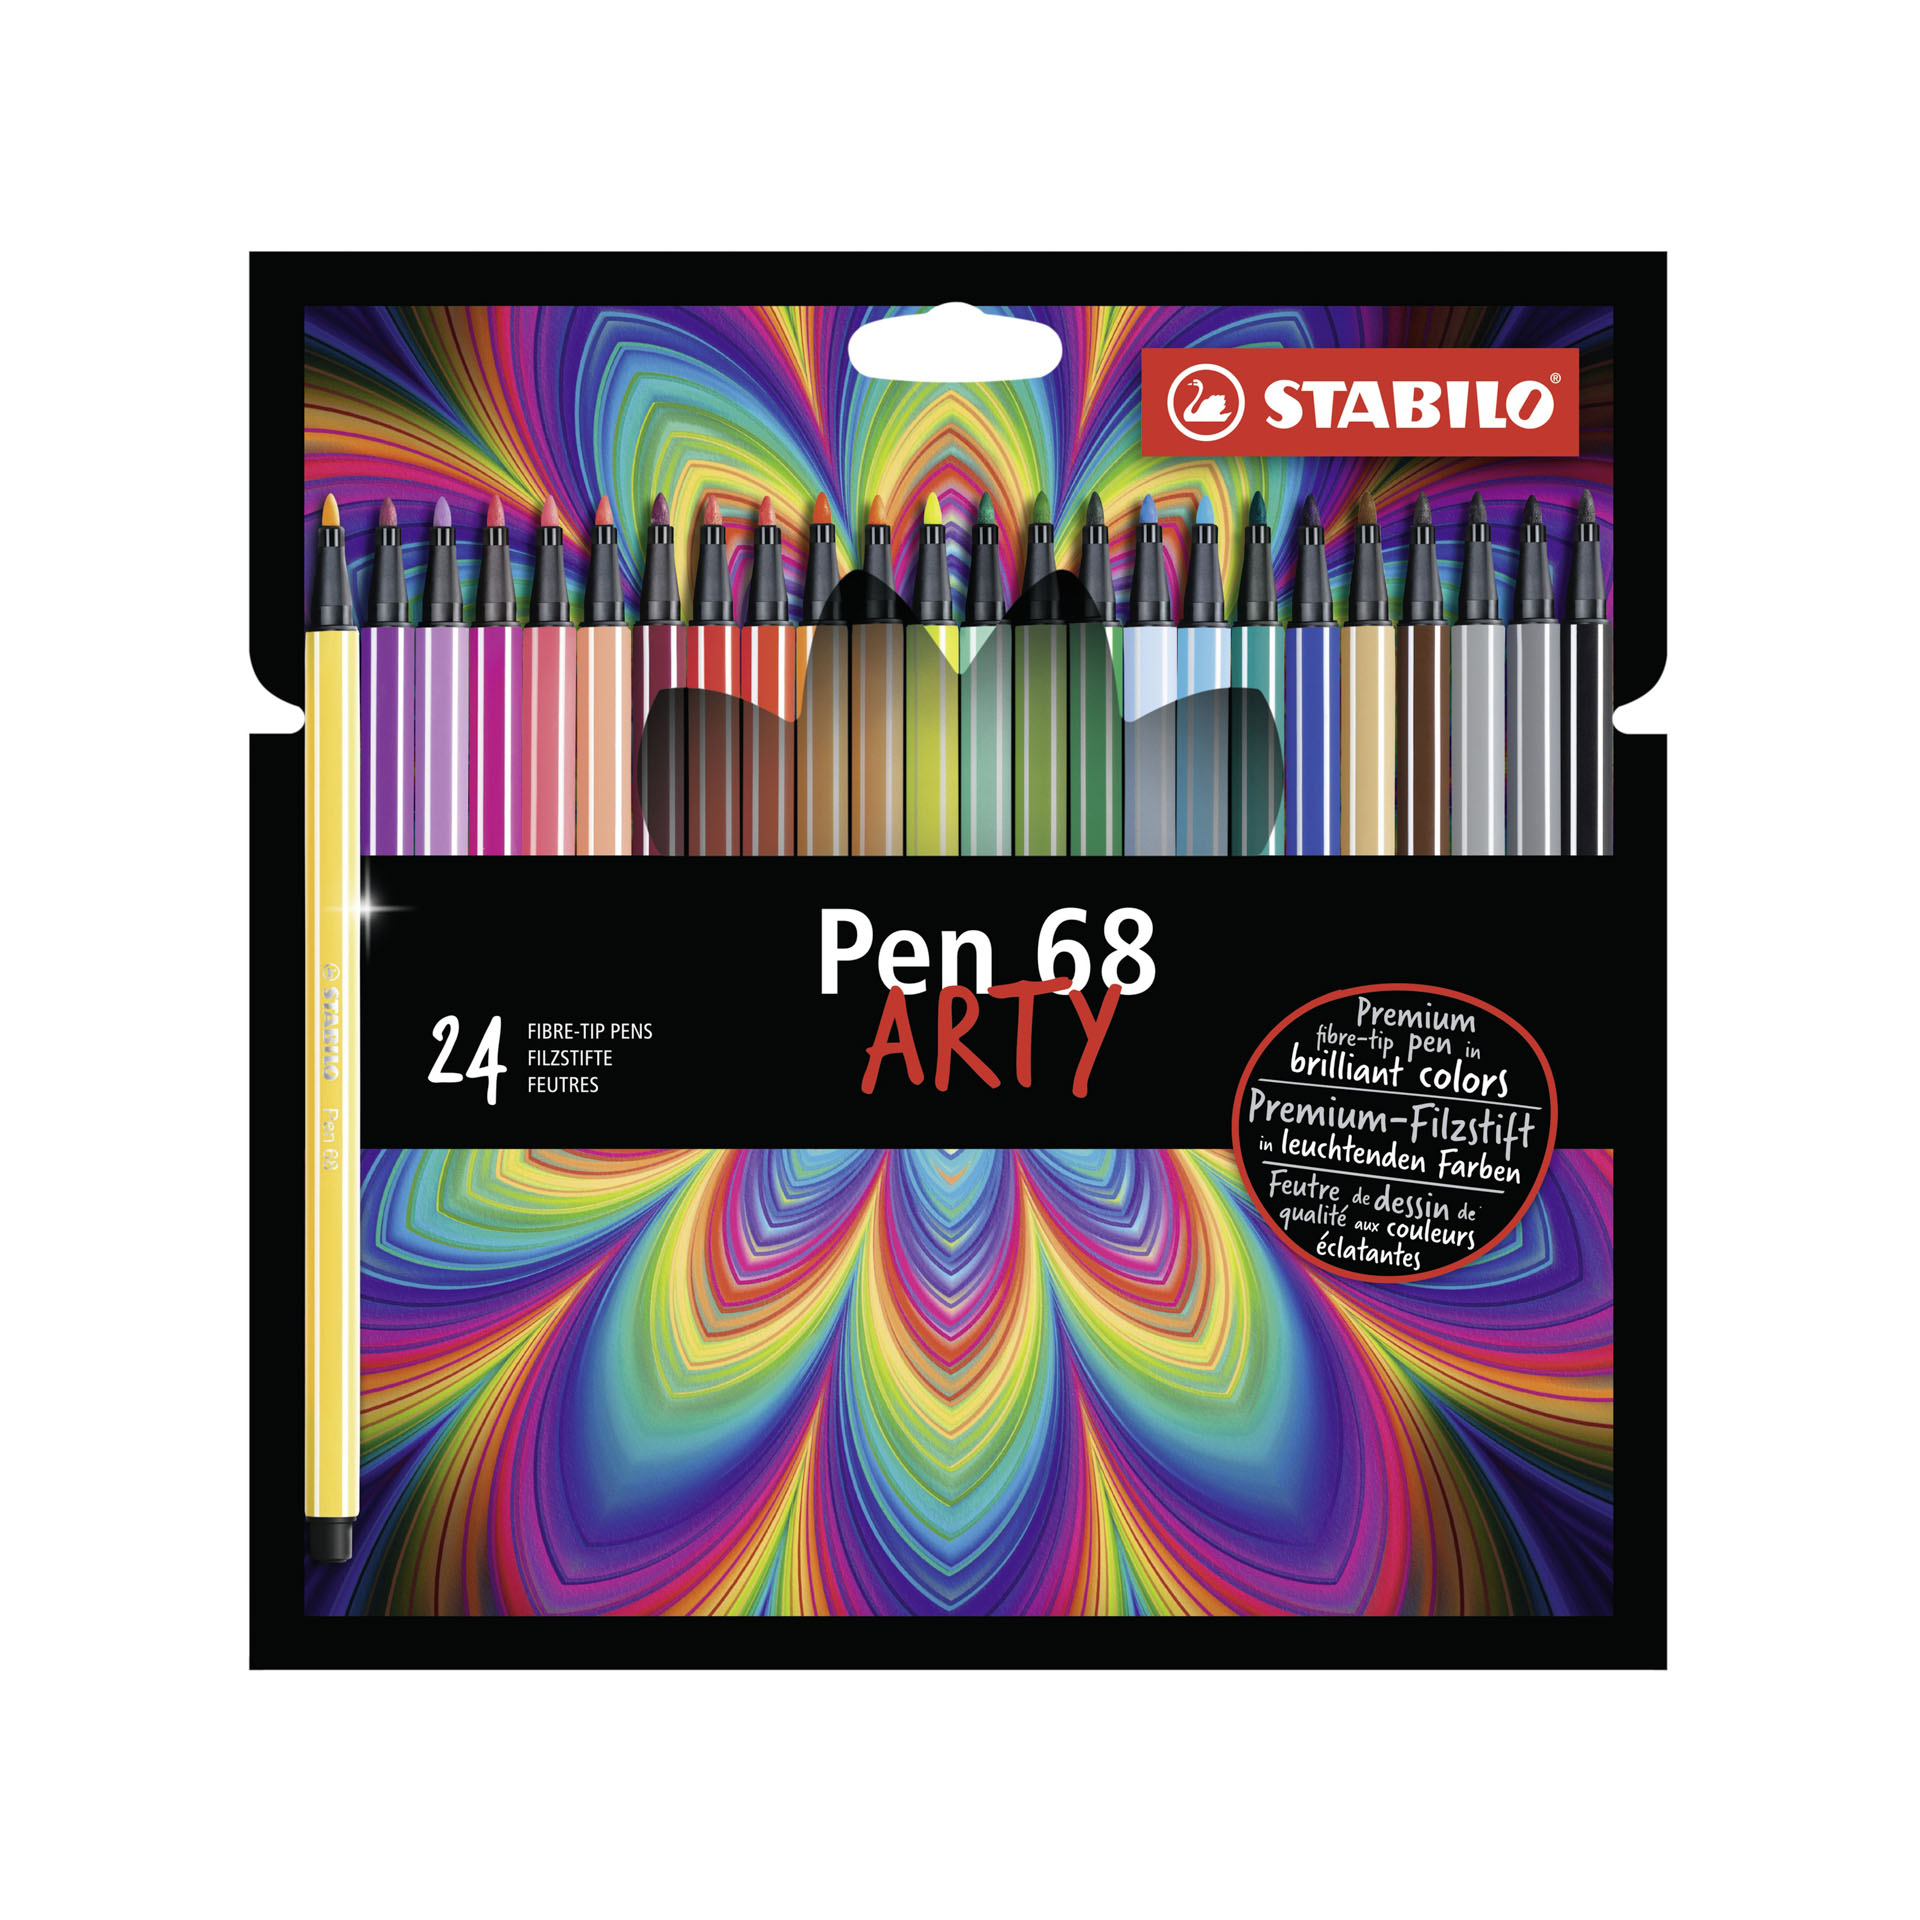 Stabilo Pen 68 - Arty - Astuccio Da 24 Con Appendino - 24 Colori Assortiti, , large